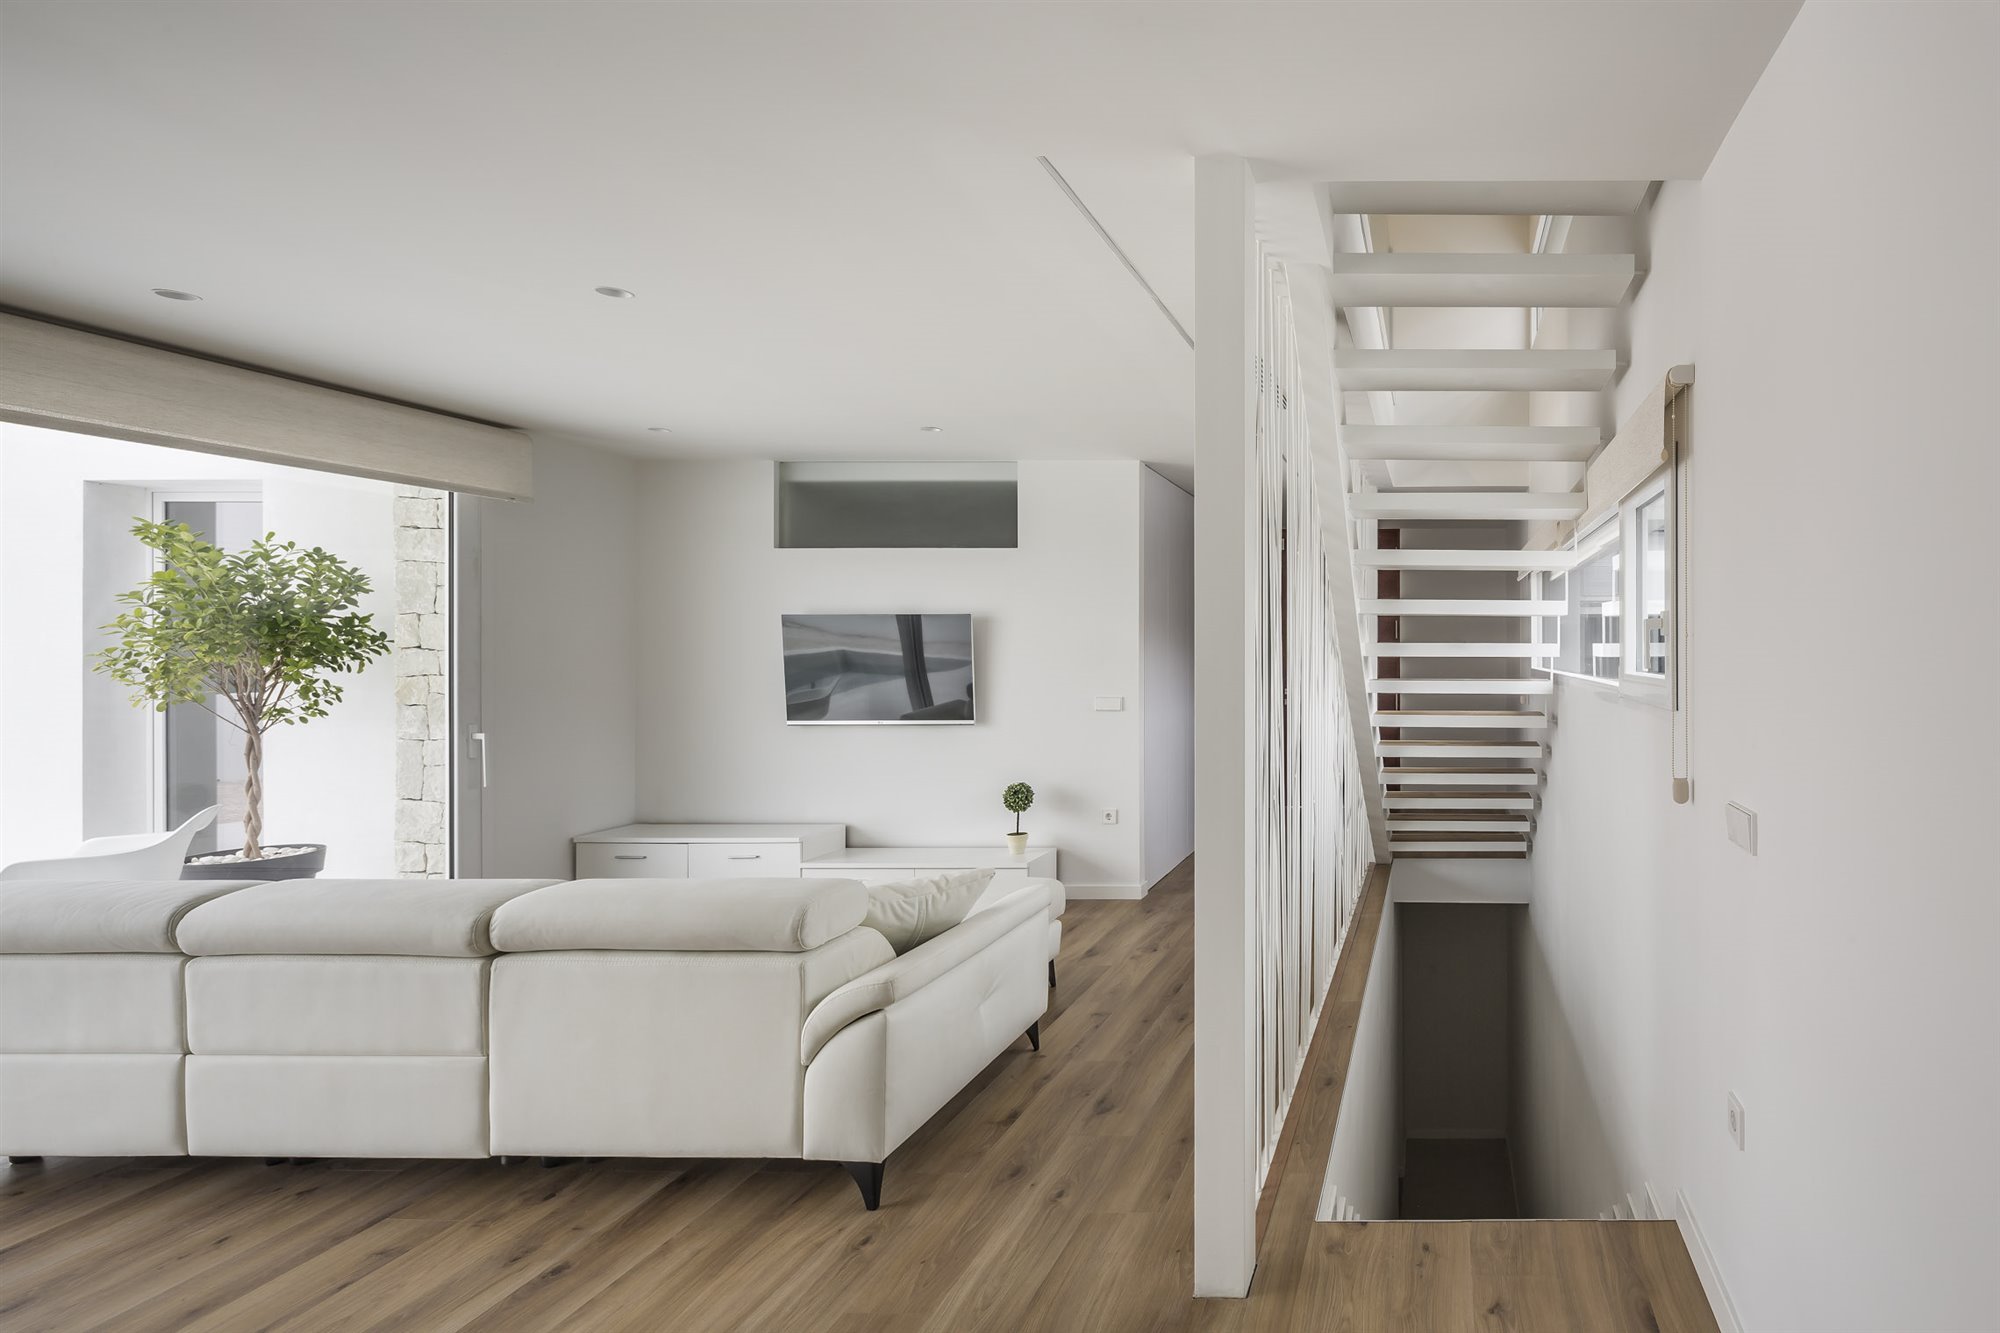 Casa moderna con fachada en blanco y negro en Valencia salon con escaleras